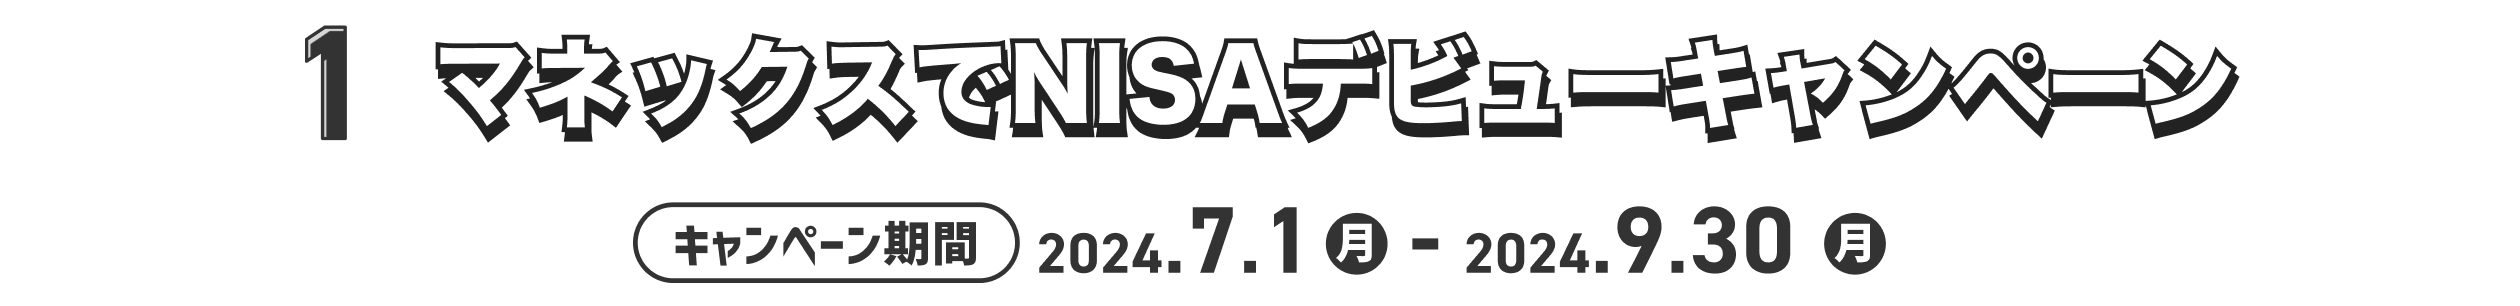 1.マネックスでNISAデビューキャンペーン キャンペーン期間2024.7.1月 - 2024.9.30月